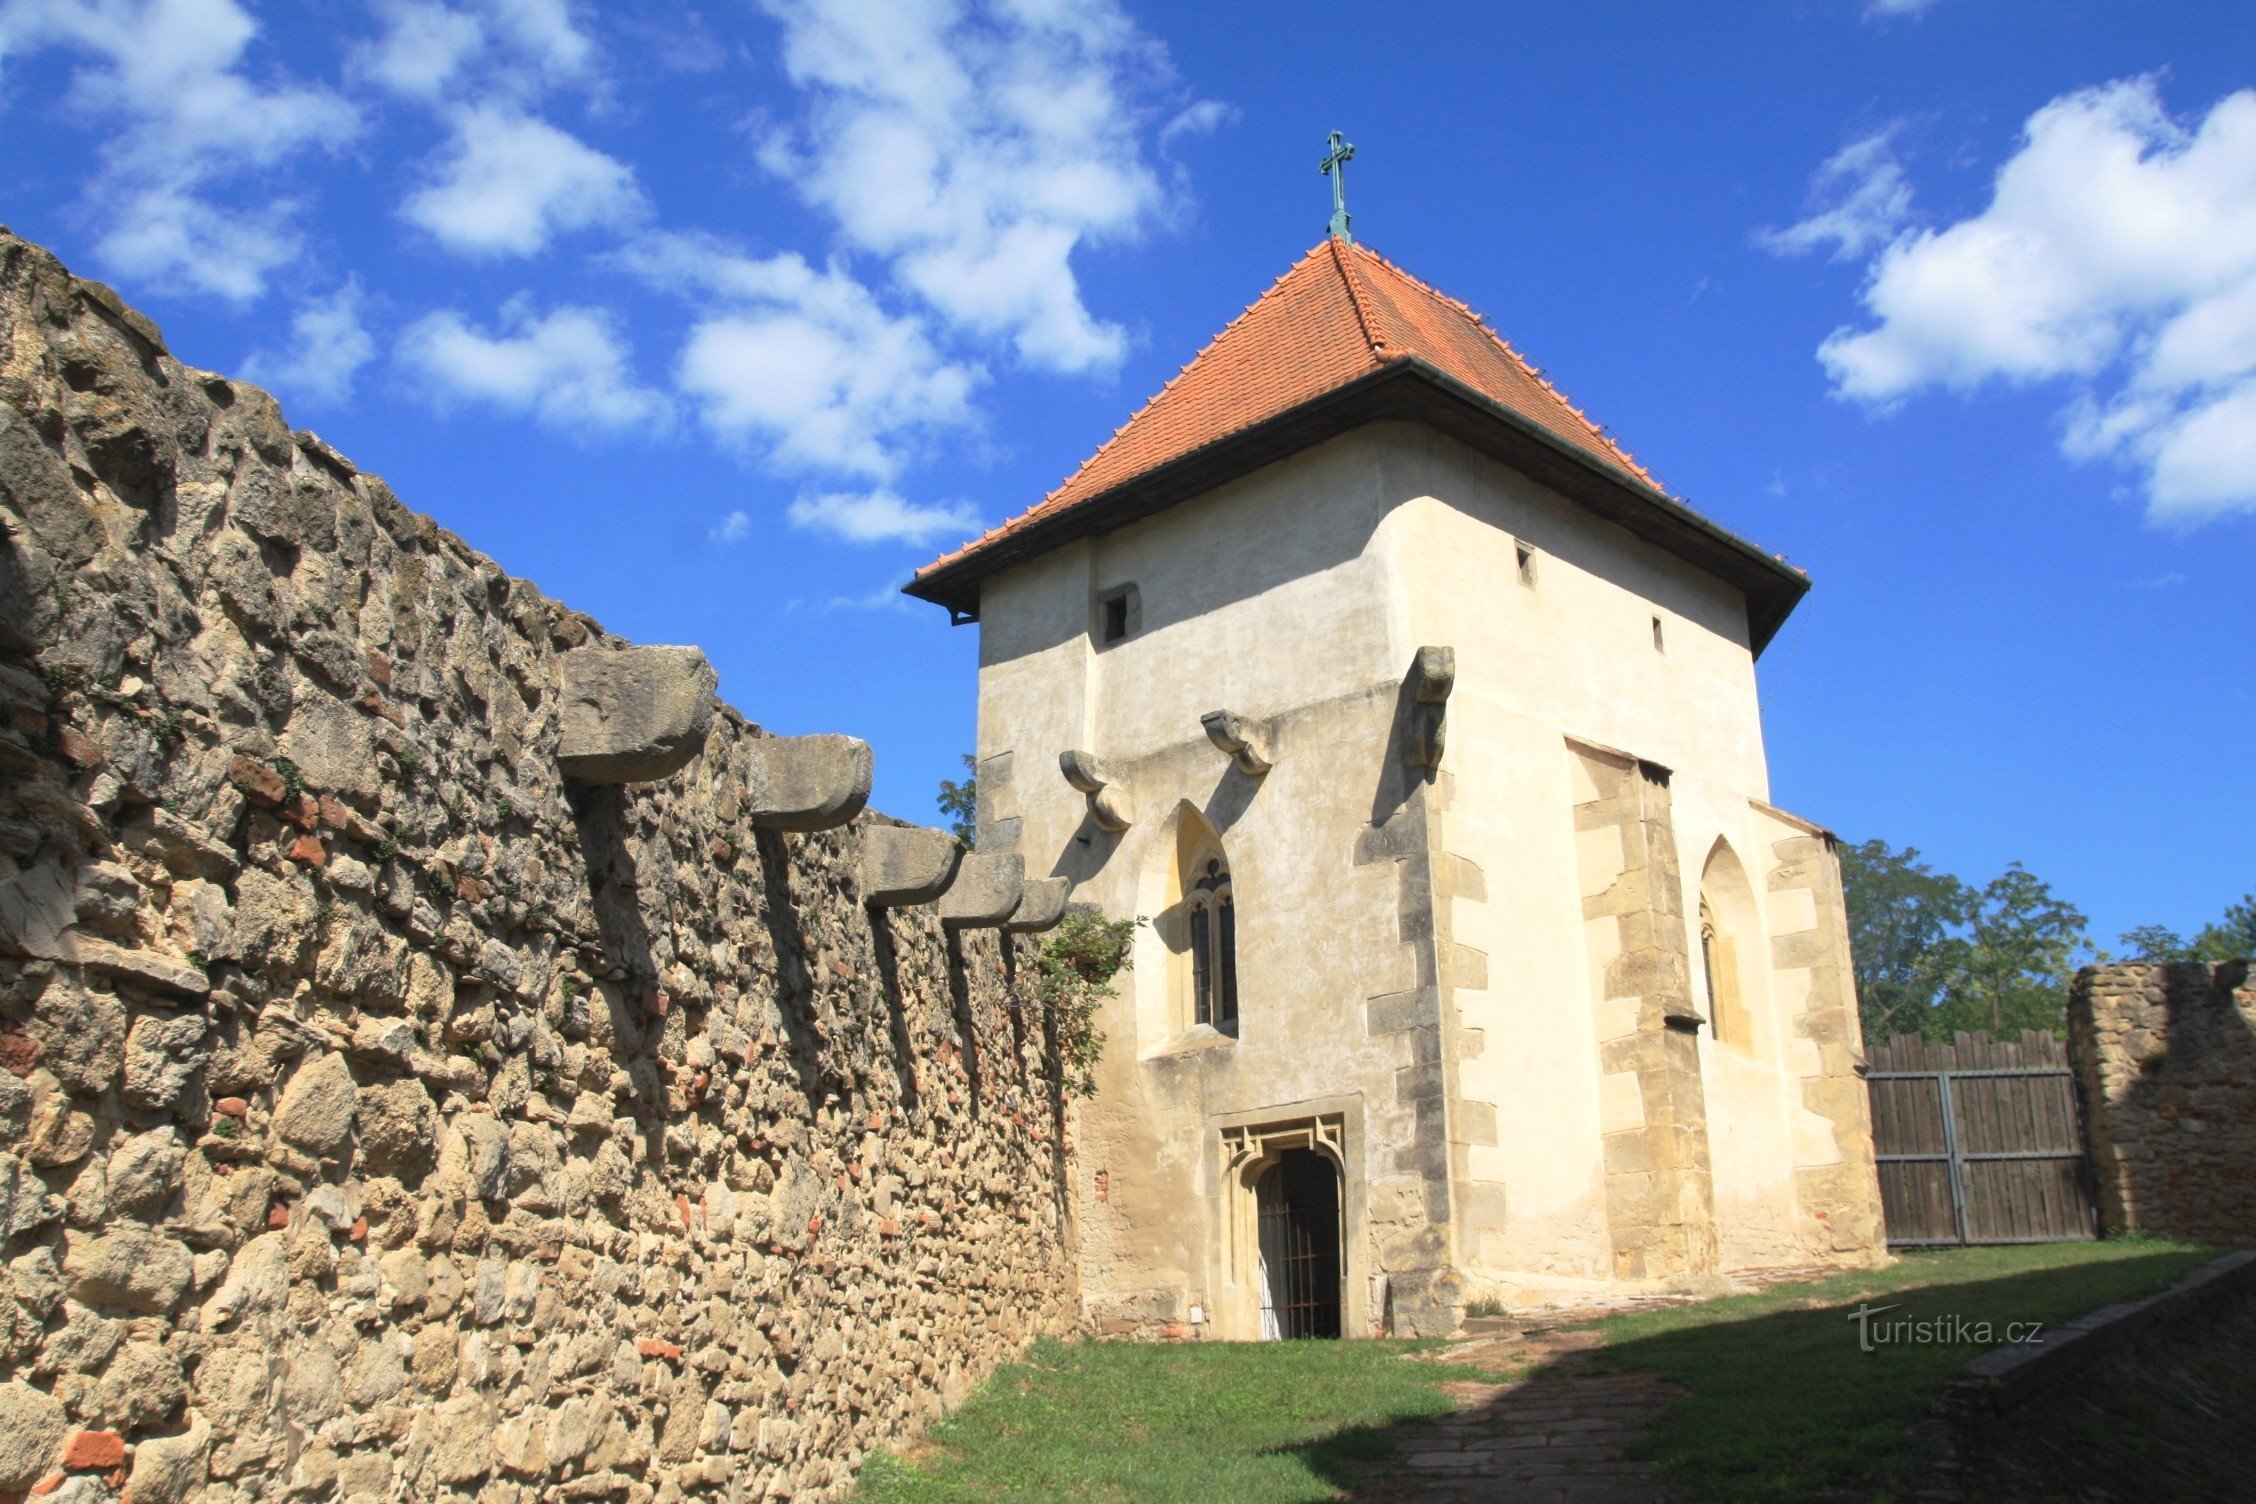 Kurdějov - nhà thờ kiên cố của St. John the Baptist